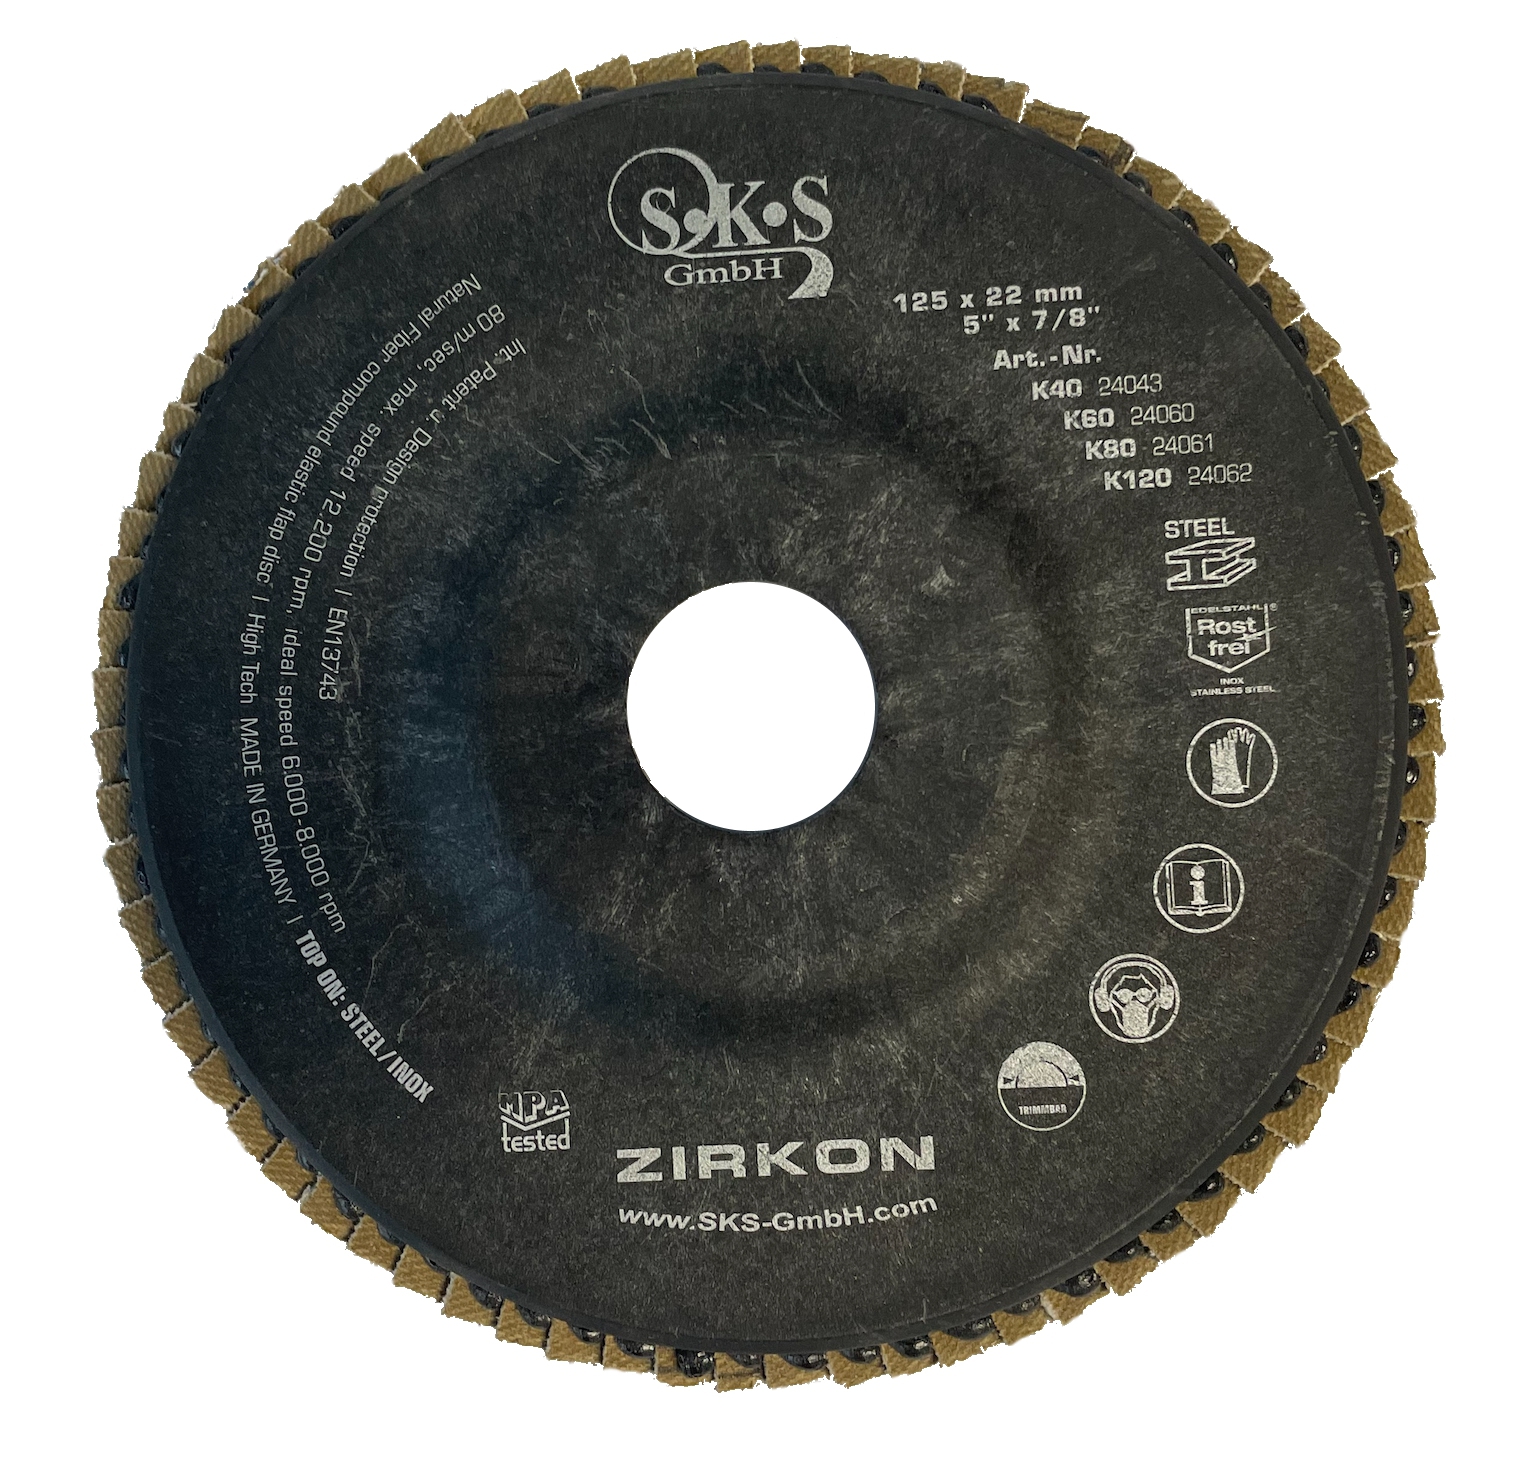 S-K-S 962 disco lamellare in zirconio, 125 mm, 22,23 mm, P40